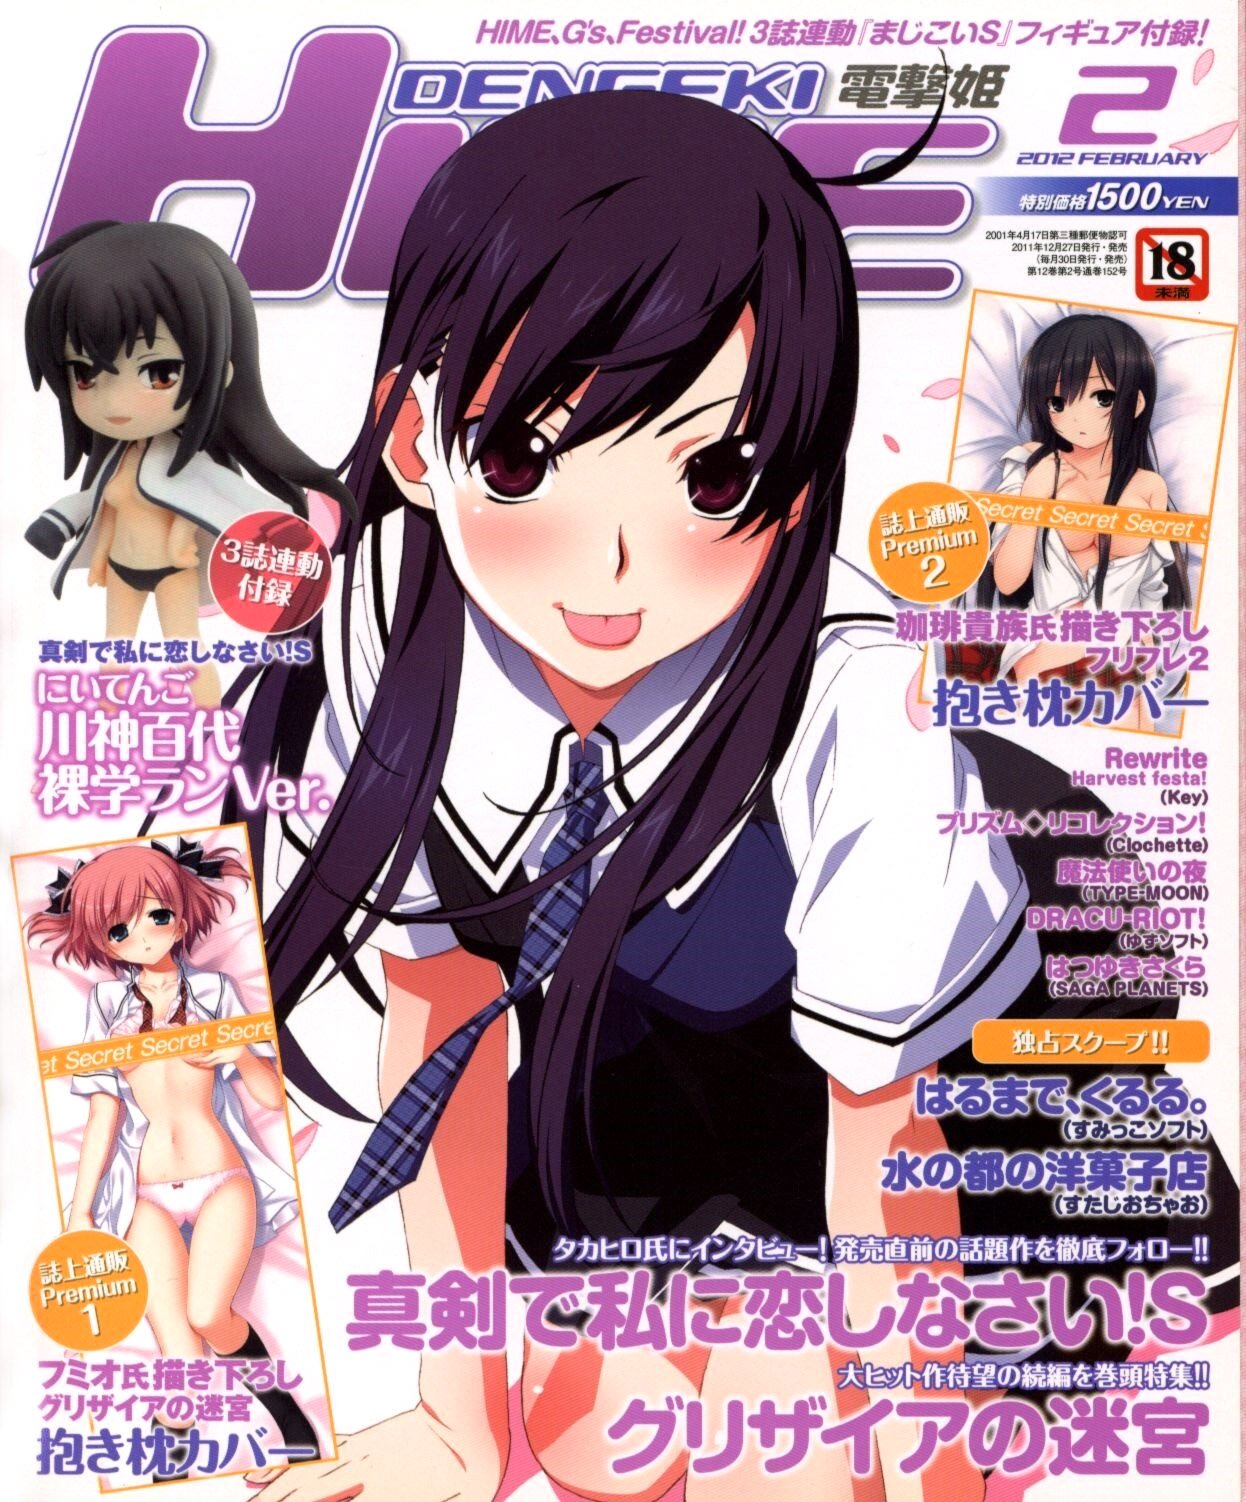 Dengeki Hime Issue 143 (February 2012)